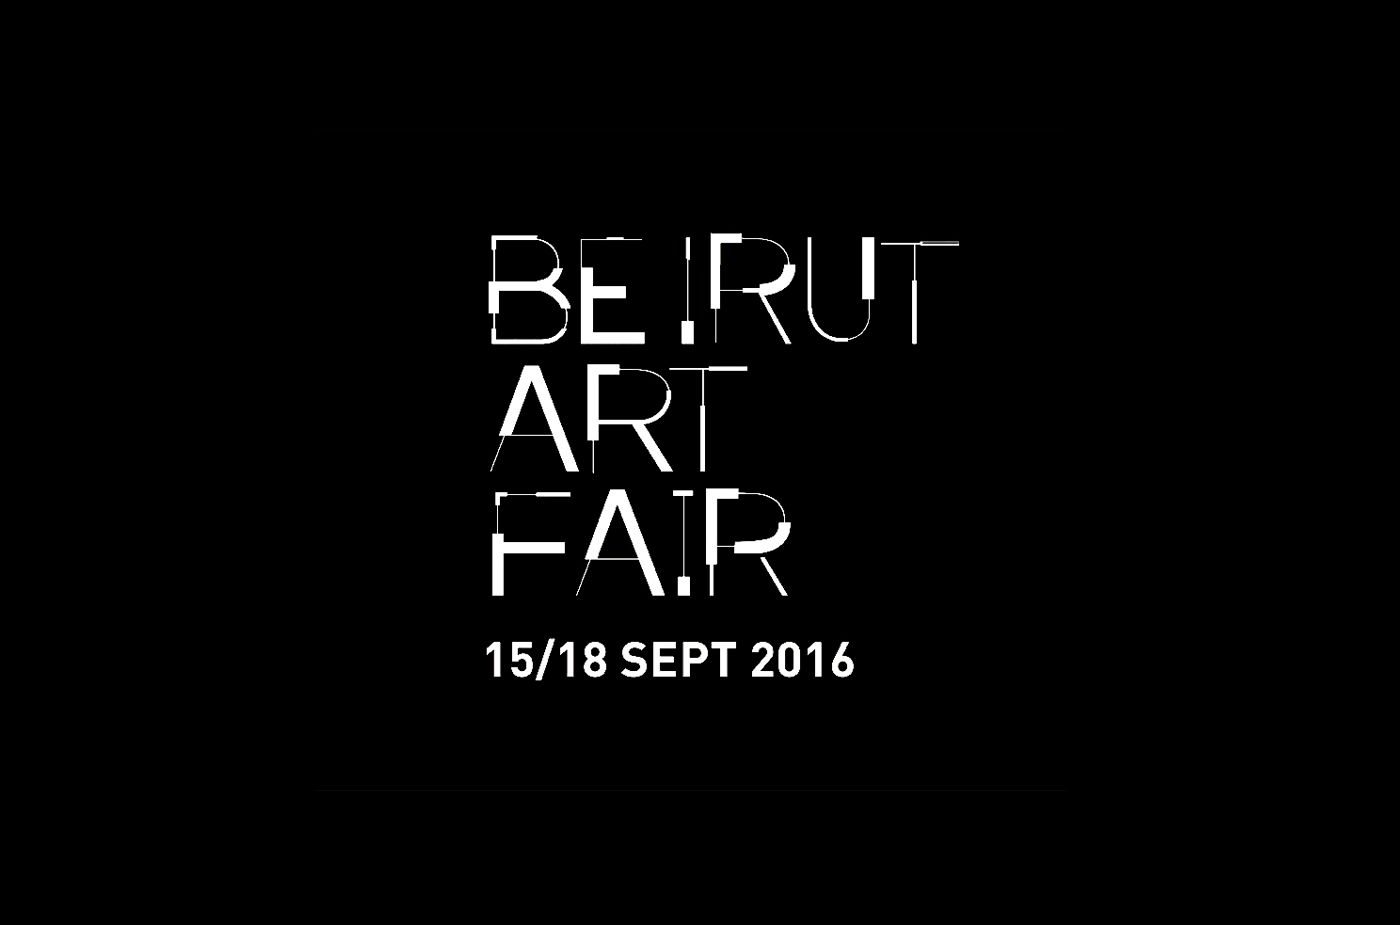 Beirut Art Fair